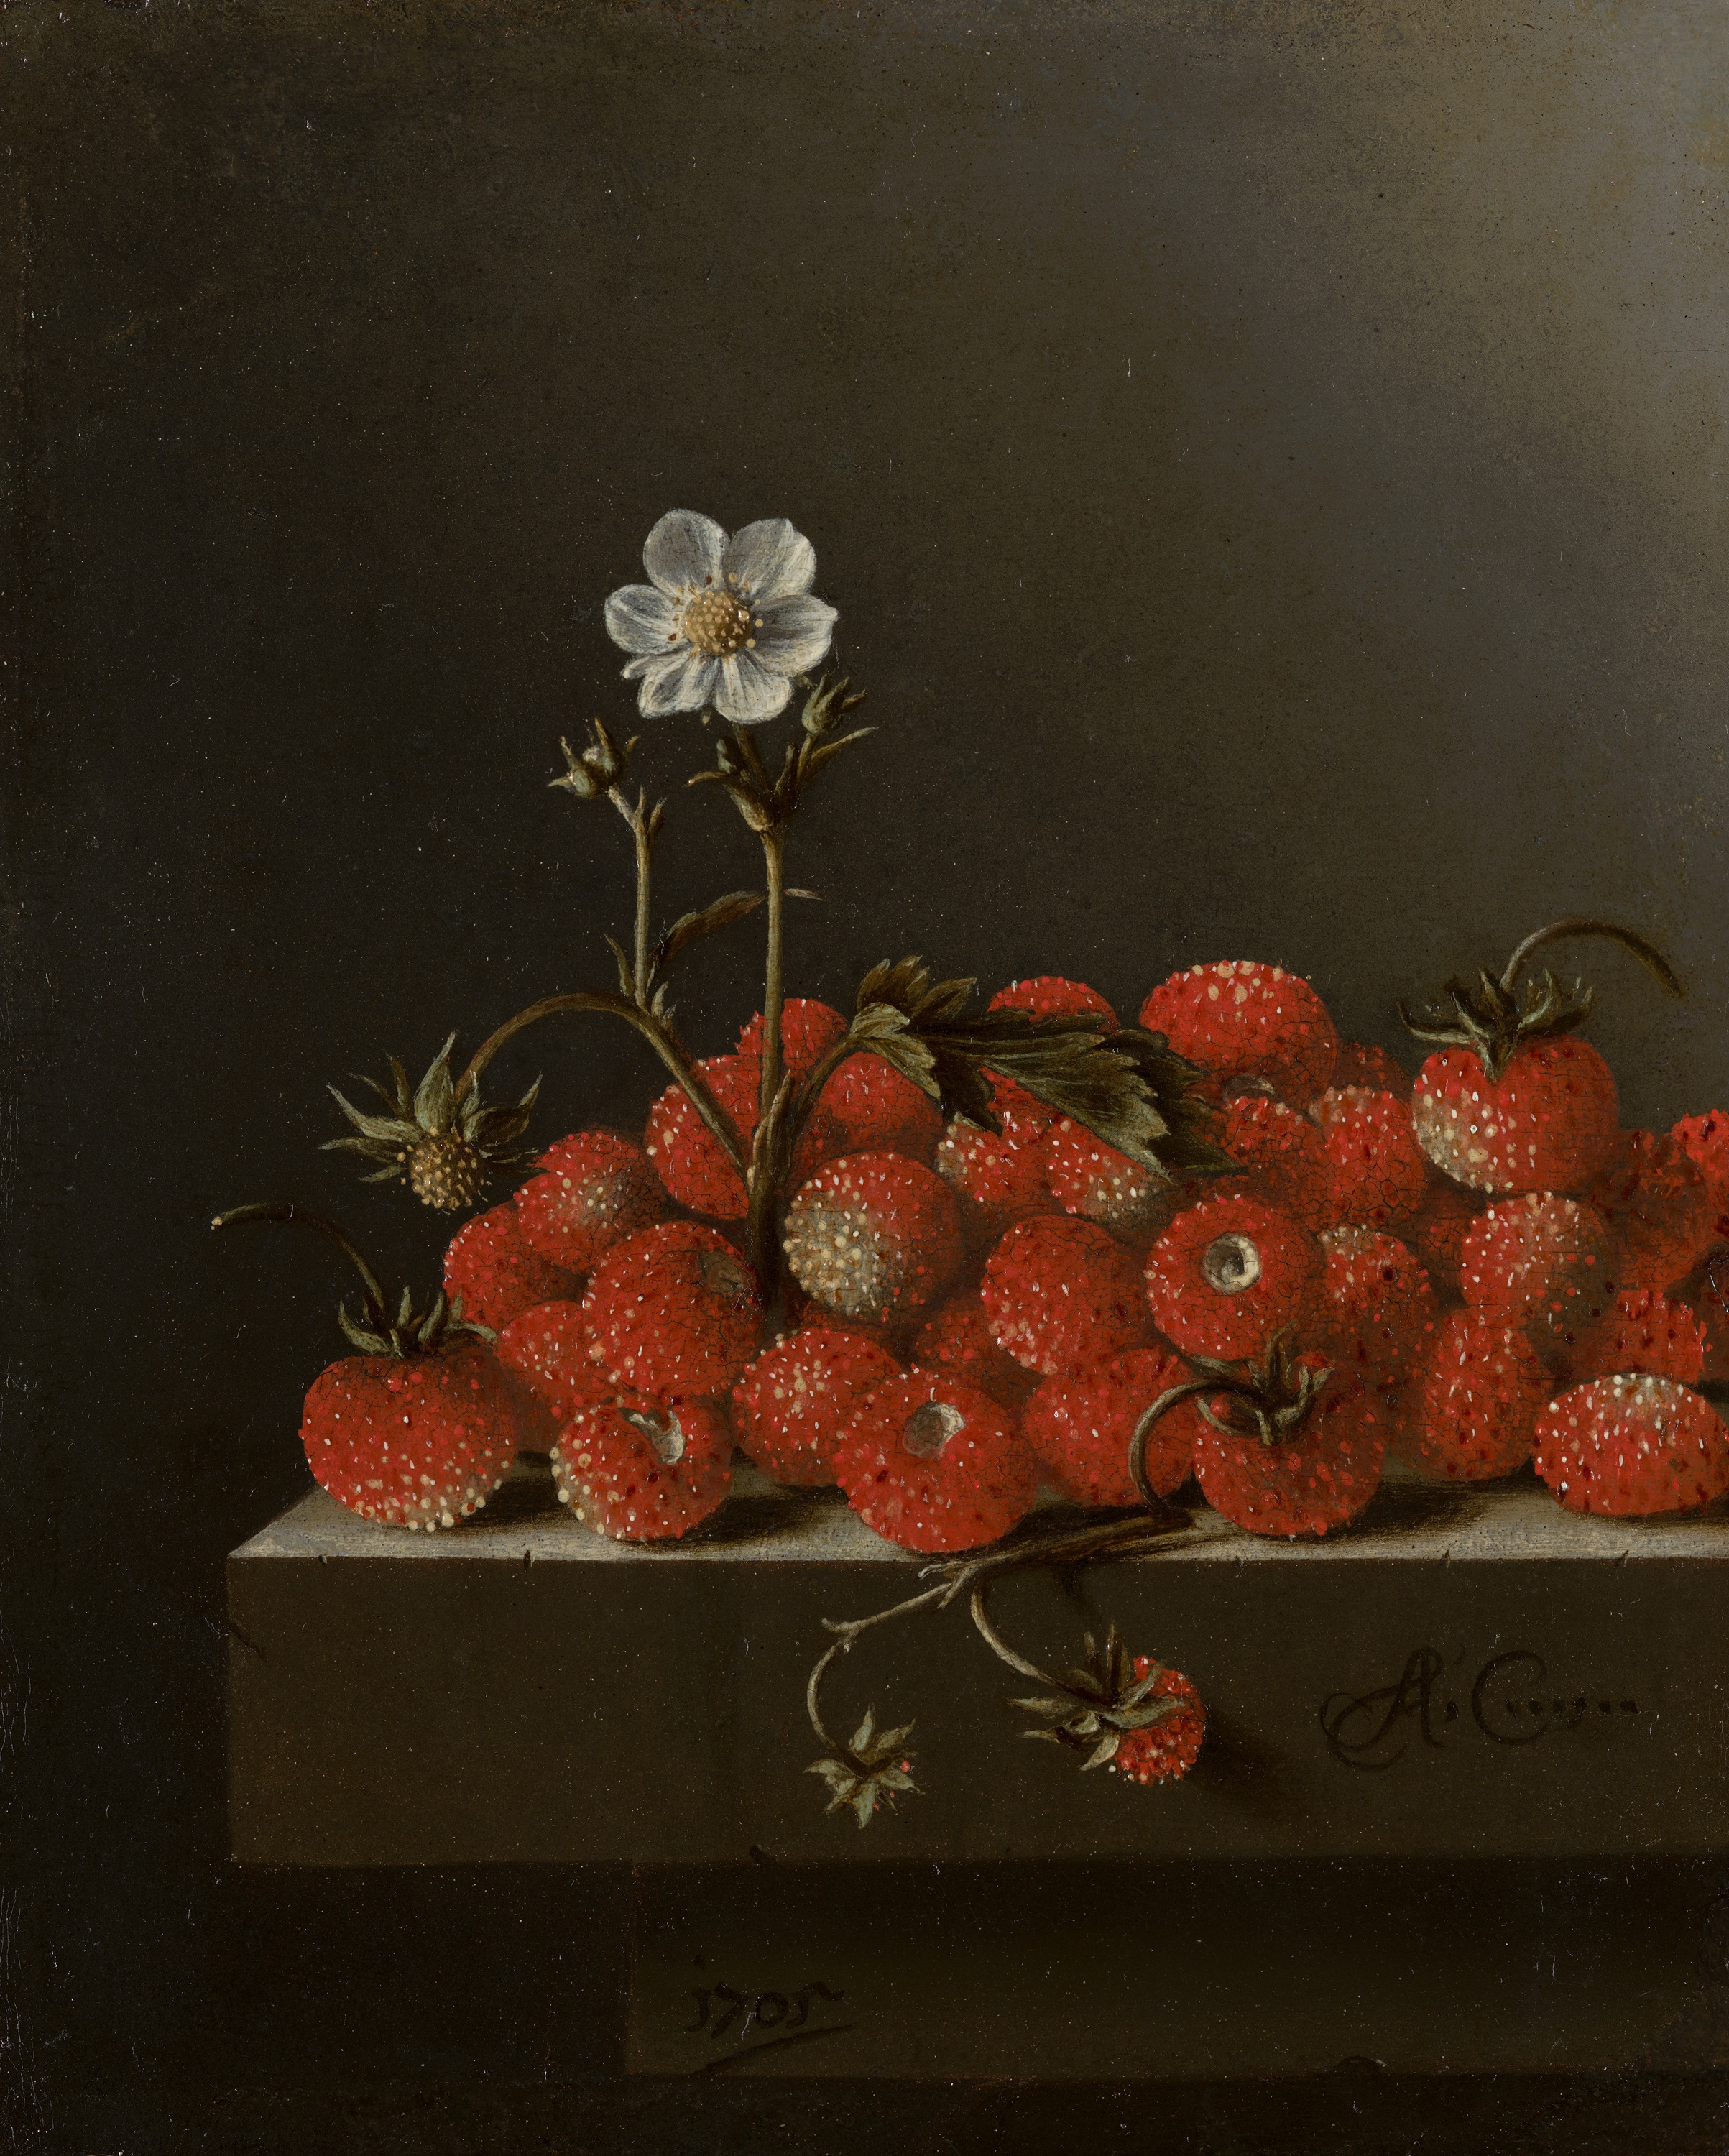 Naturaleza muerta con fresas silvestres by Adriaen Coorte - 1705 - 16.5 x 14 cm Mauritshuis, La Haya